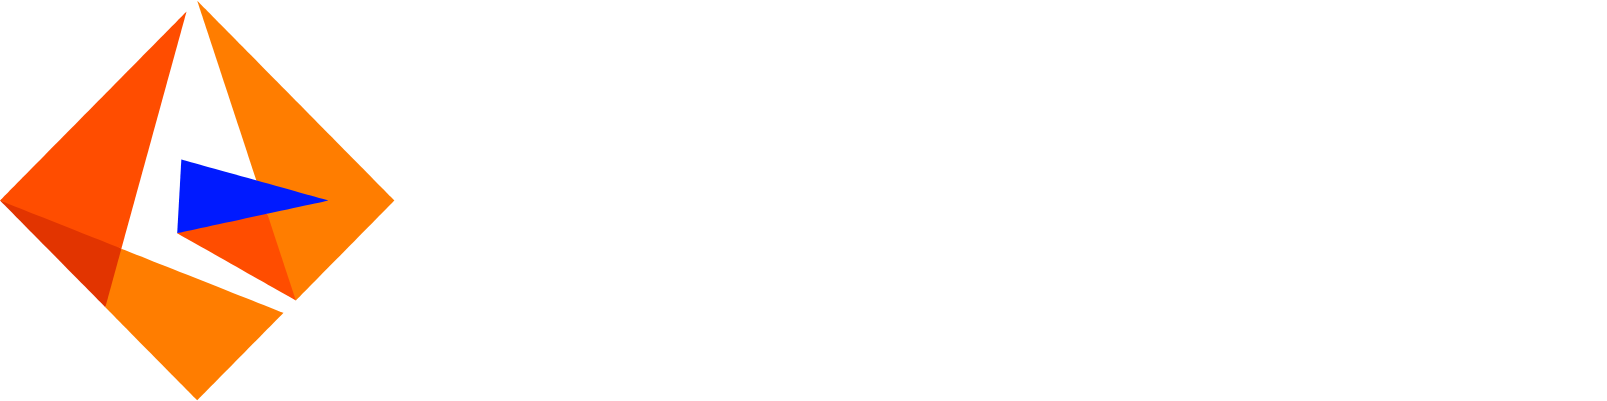 Informatica logo large for dark backgrounds (transparent PNG)